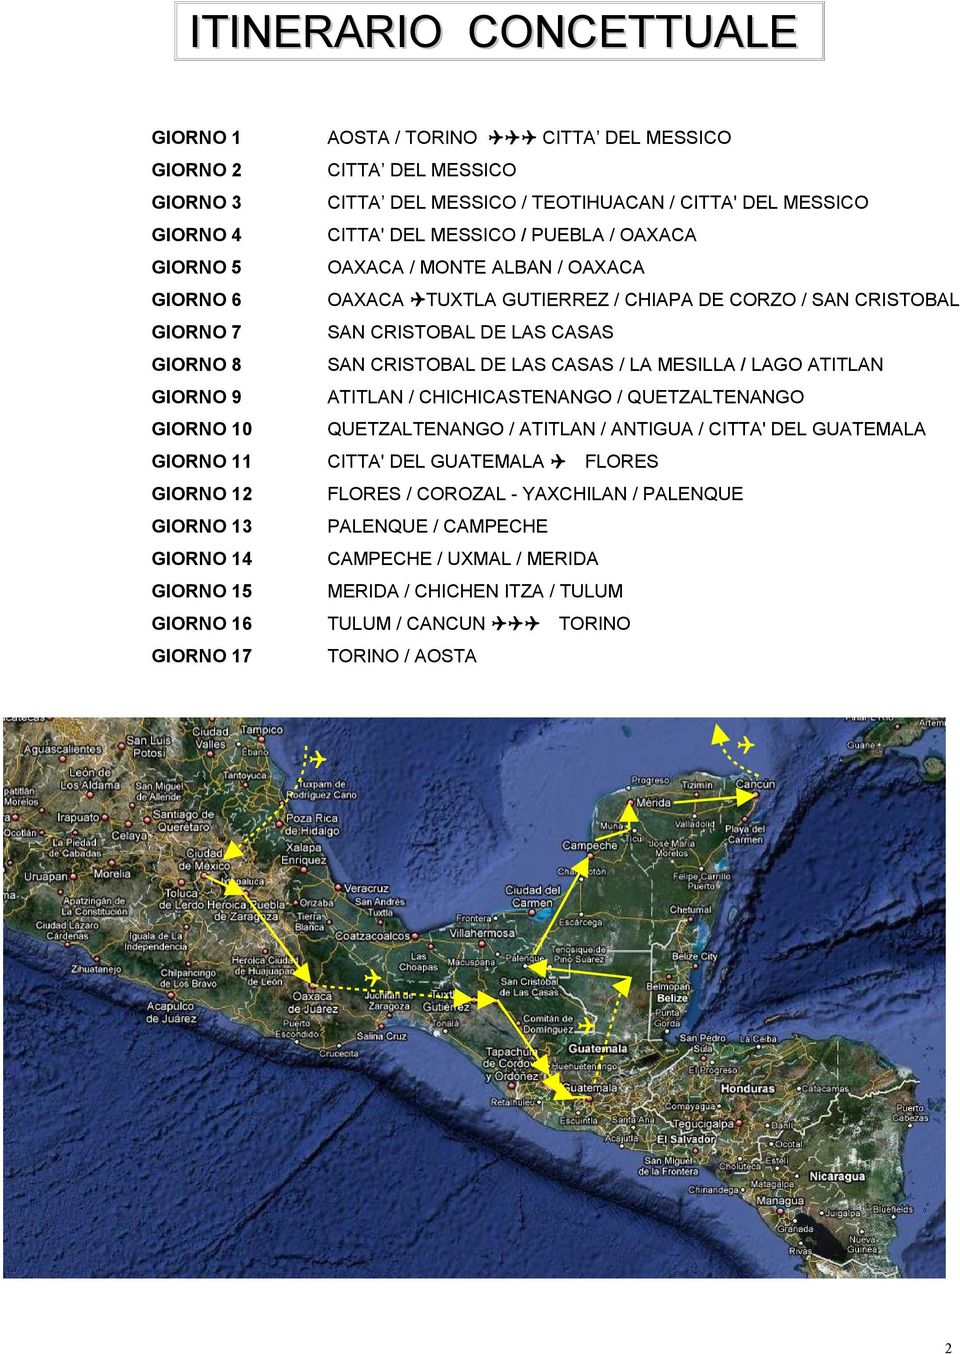 MESILLA / LAGO ATITLAN GIORNO 9 ATITLAN / CHICHICASTENANGO / QUETZALTENANGO GIORNO 10 QUETZALTENANGO / ATITLAN / ANTIGUA / CITTA' DEL GUATEMALA GIORNO 11 CITTA' DEL GUATEMALA FLORES GIORNO 12